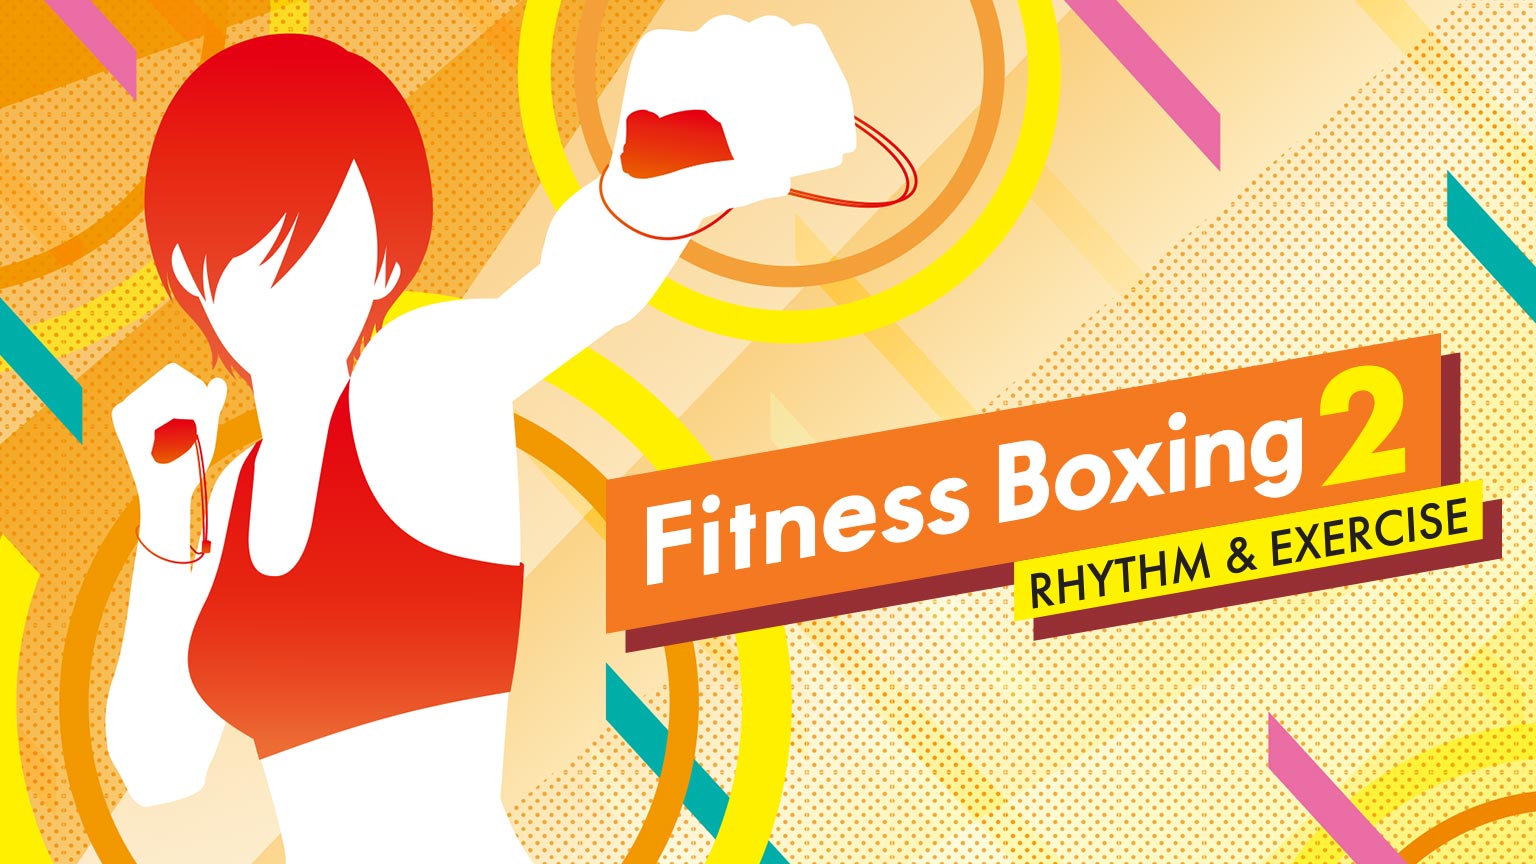 Fitness Boxing 2: Rhythm & Exercise | Nintendo Switch | Nintendo